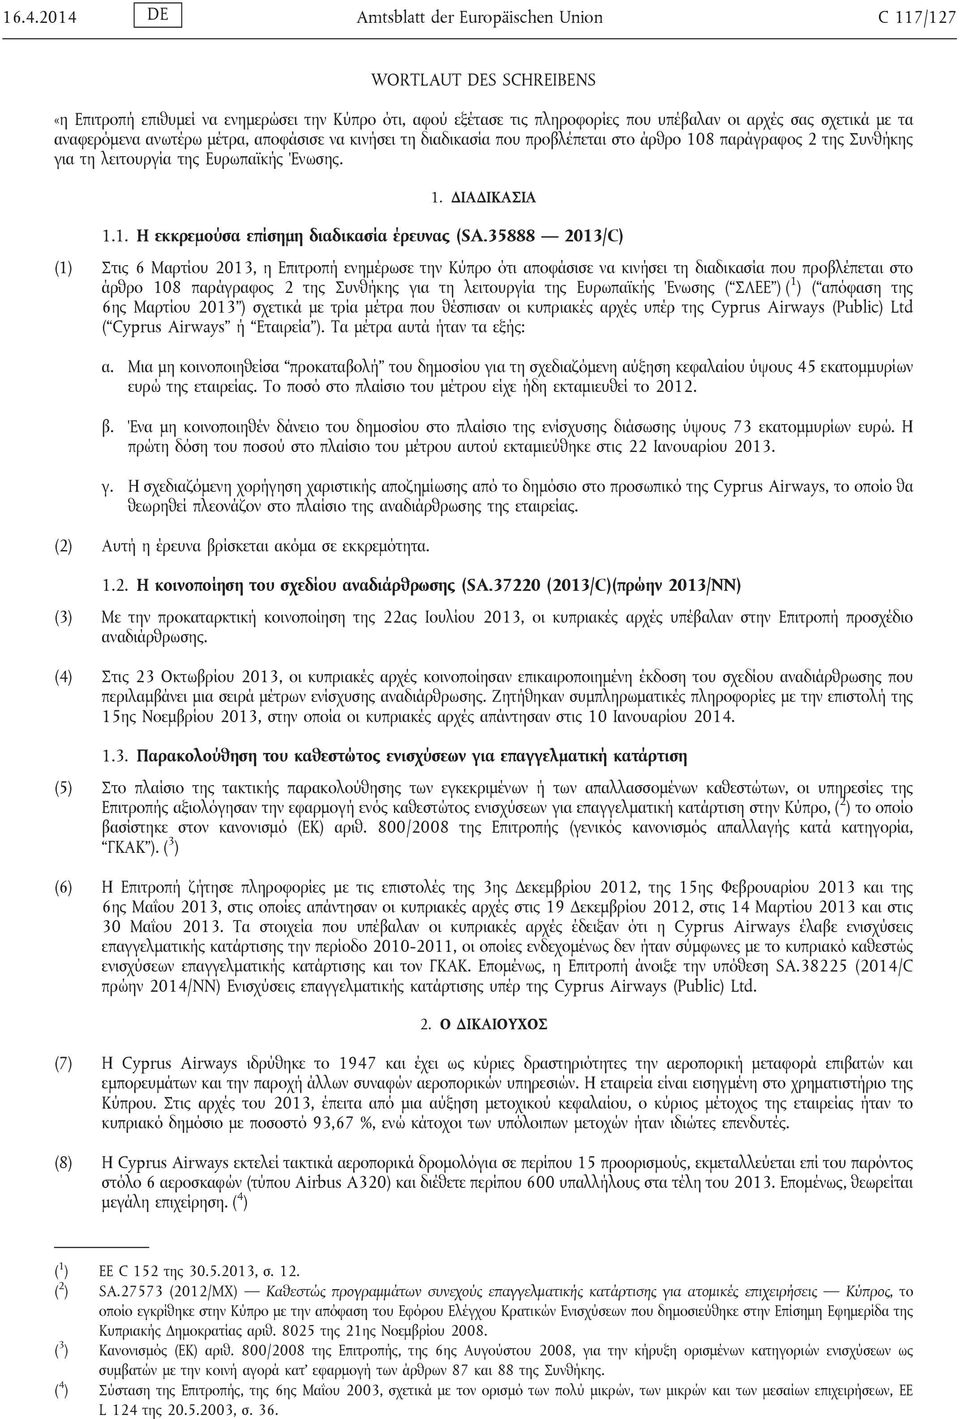 35888 2013/C) (1) Στις 6 Μαρτίου 2013, η Επιτροπή ενημέρωσε την Κύπρο ότι αποφάσισε να κινήσει τη διαδικασία που προβλέπεται στο άρθρο 108 παράγραφος 2 της Συνθήκης για τη λειτουργία της Ευρωπαϊκής